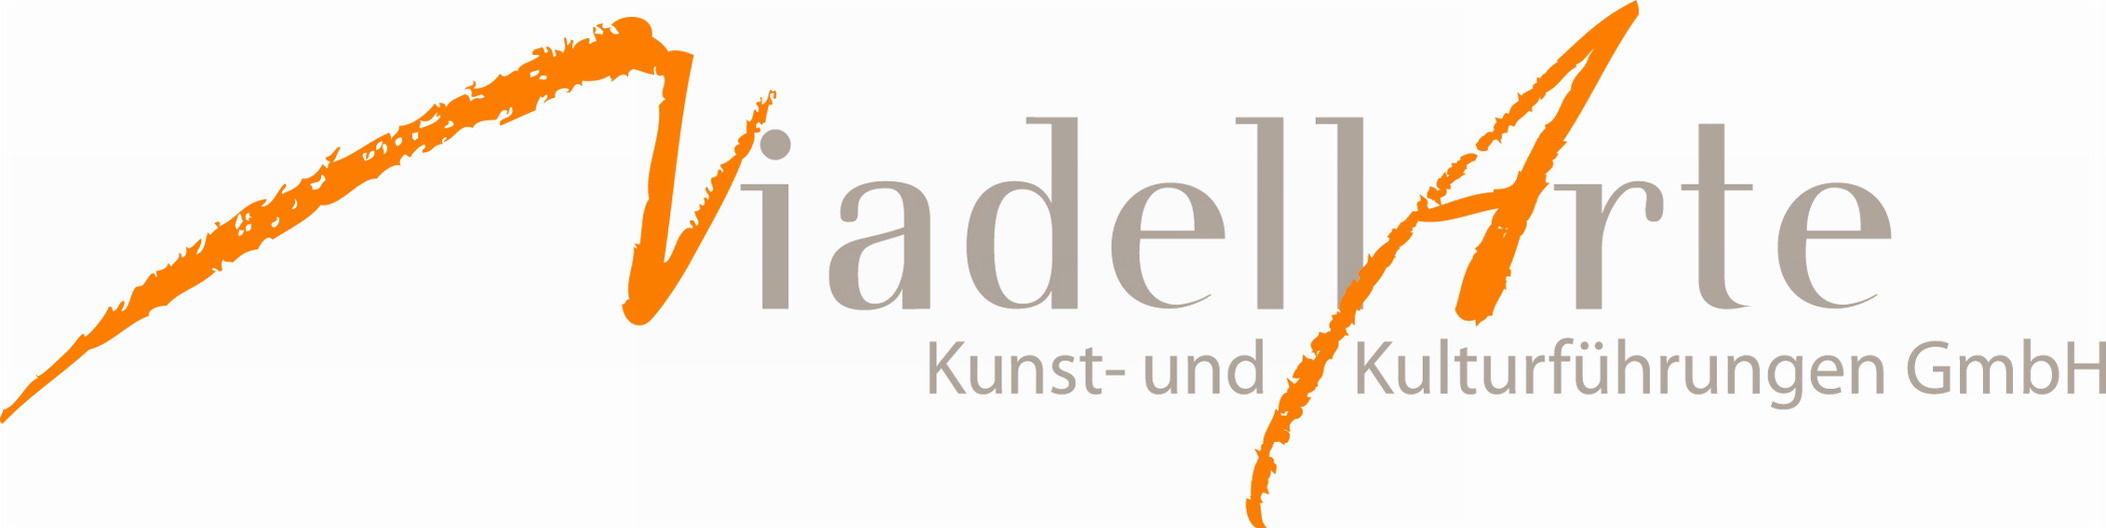 ViadellArte Kunst- und Kulturführungen GmbH